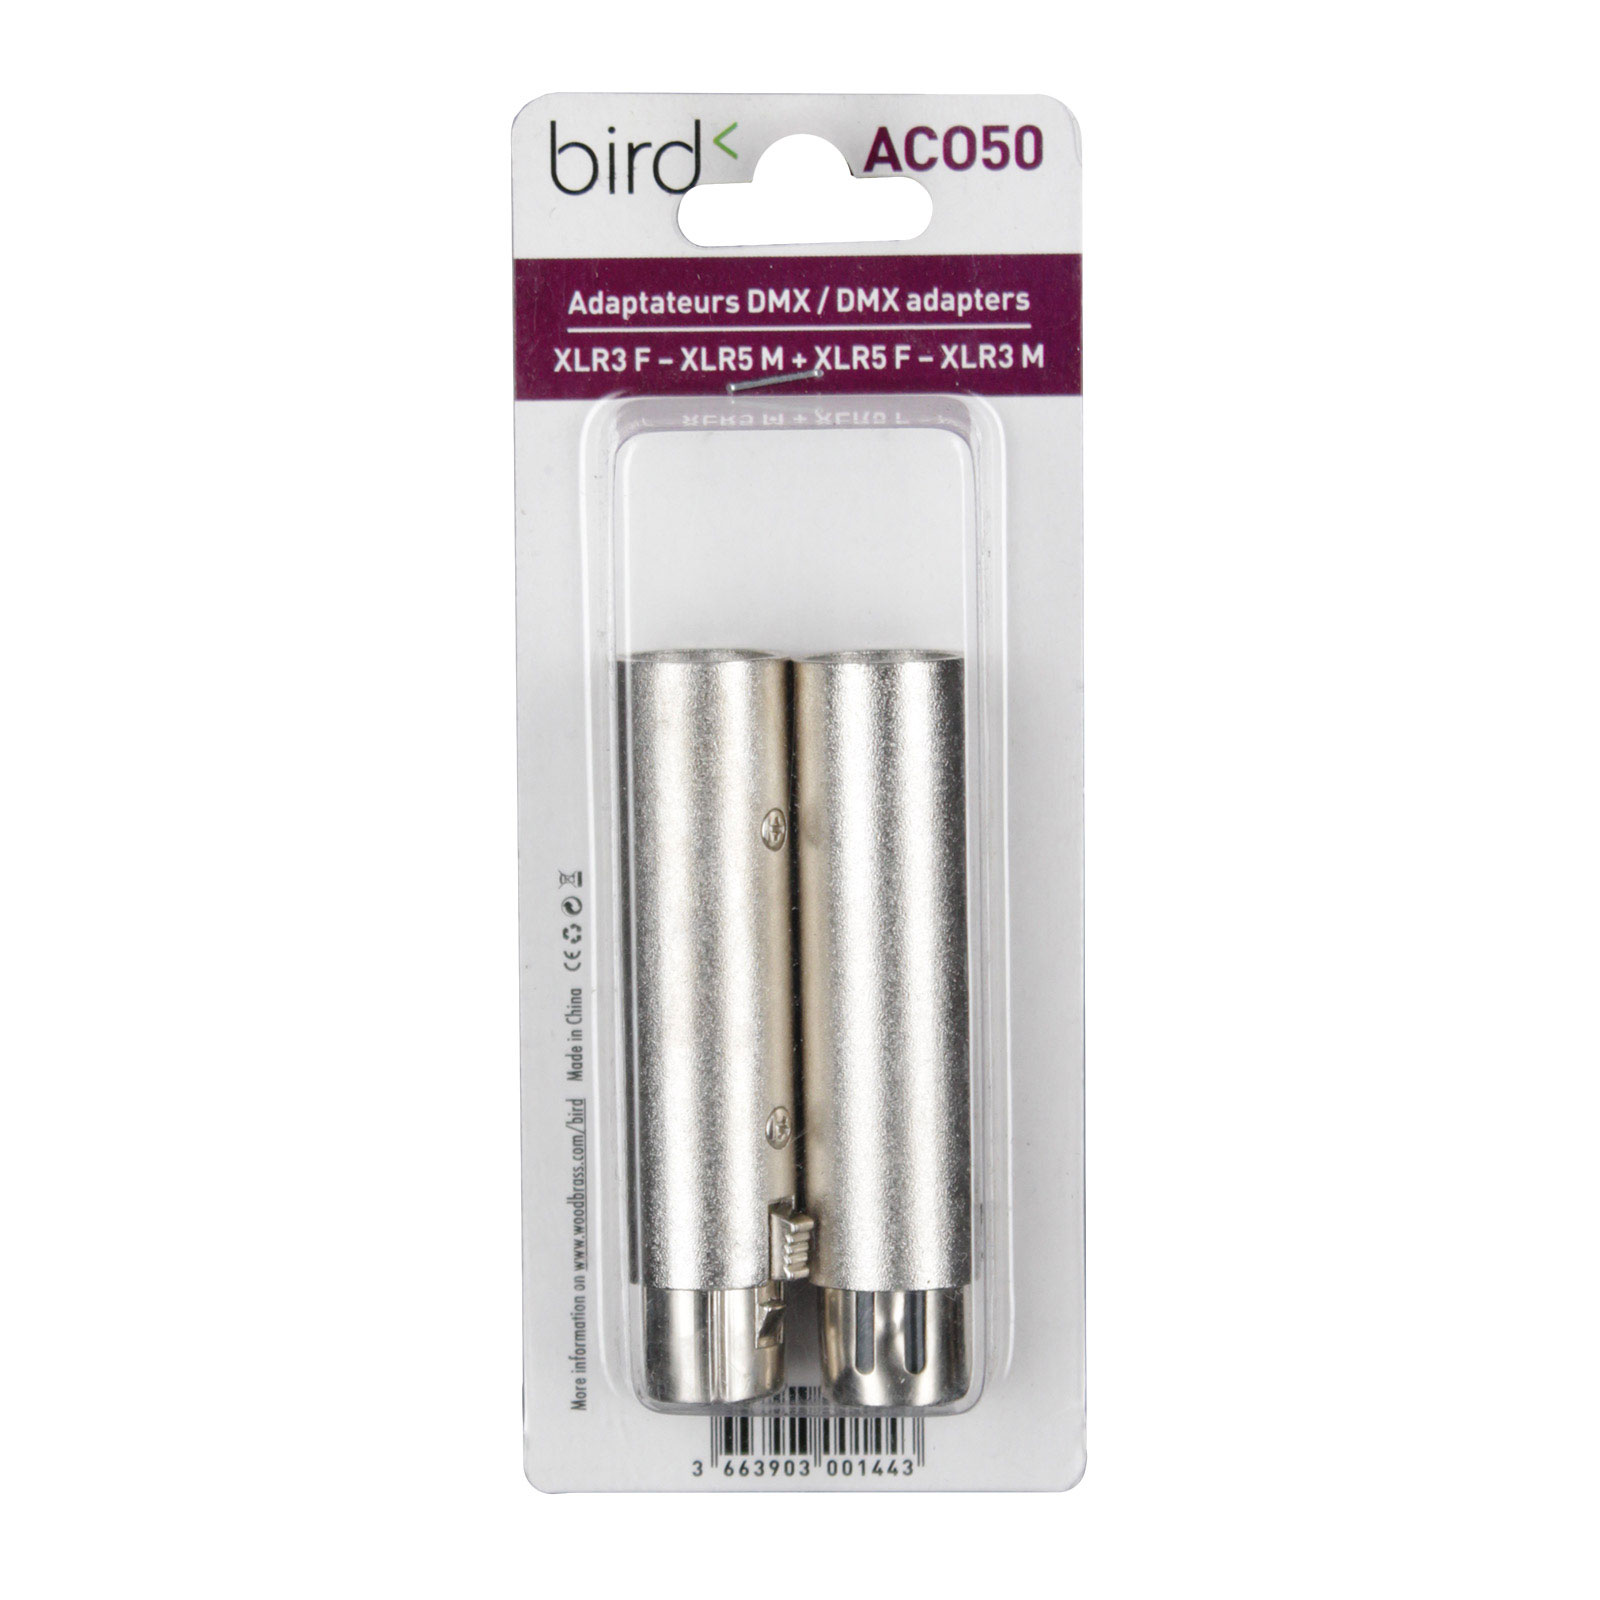 BIRD ACO50 - DMX ADAPTERS F XLR3 - M XLR5 / F XLR5 - M XLR3